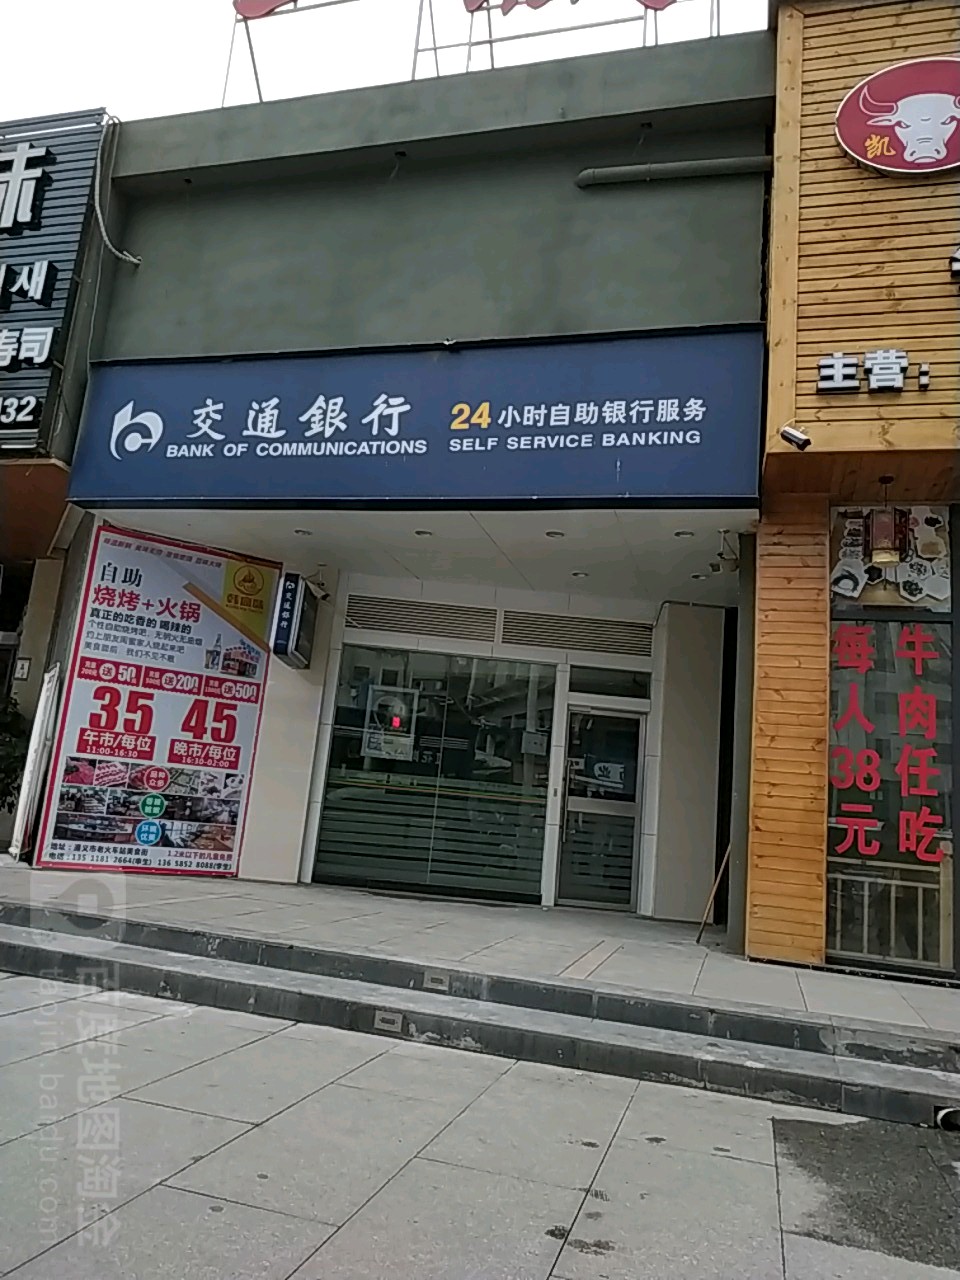 交通銀行24小時自助銀行服務(北京路店)